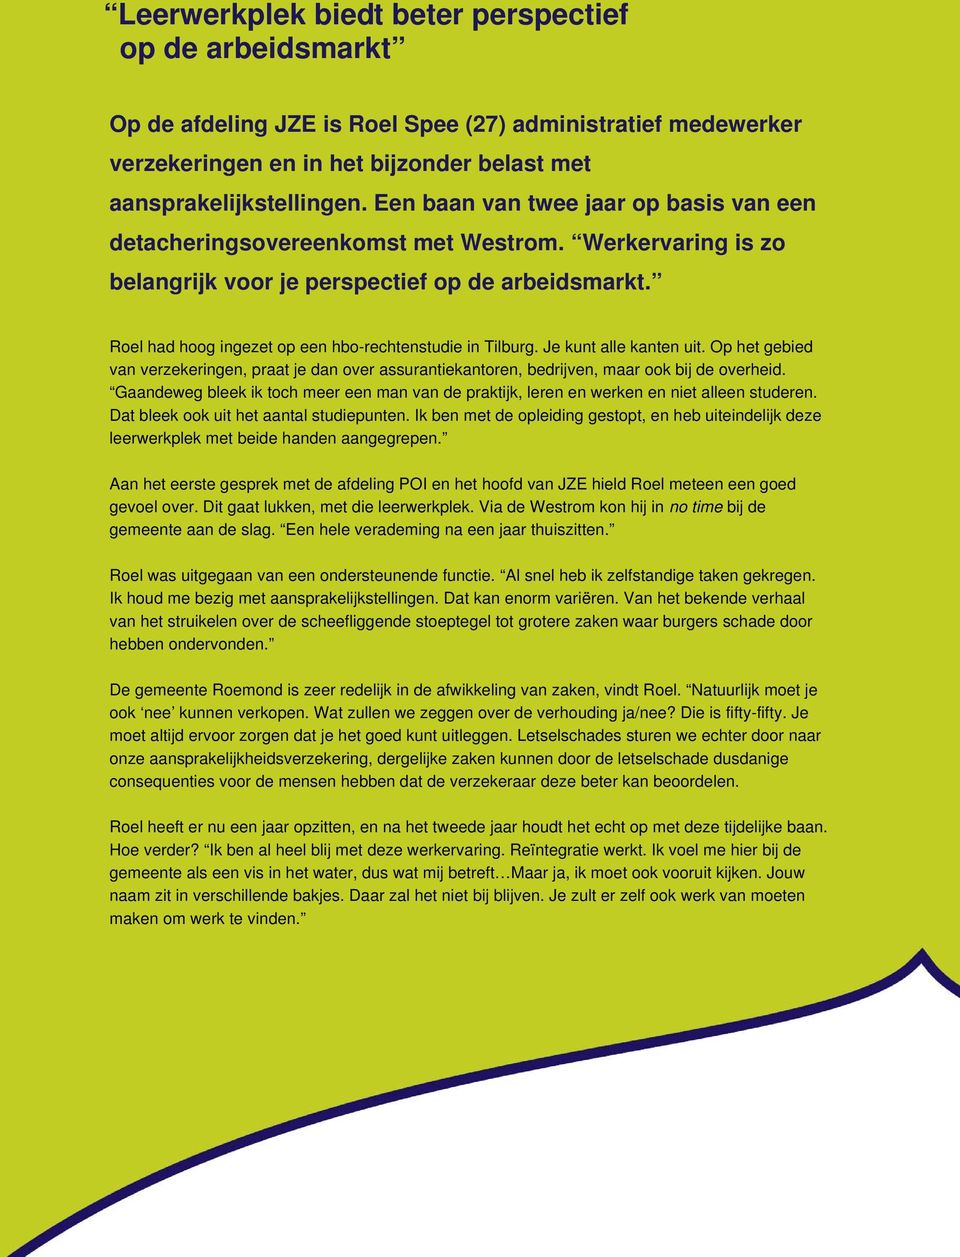 Roel had hoog ingezet op een hbo-rechtenstudie in Tilburg. Je kunt alle kanten uit. Op het gebied van verzekeringen, praat je dan over assurantiekantoren, bedrijven, maar ook bij de overheid.